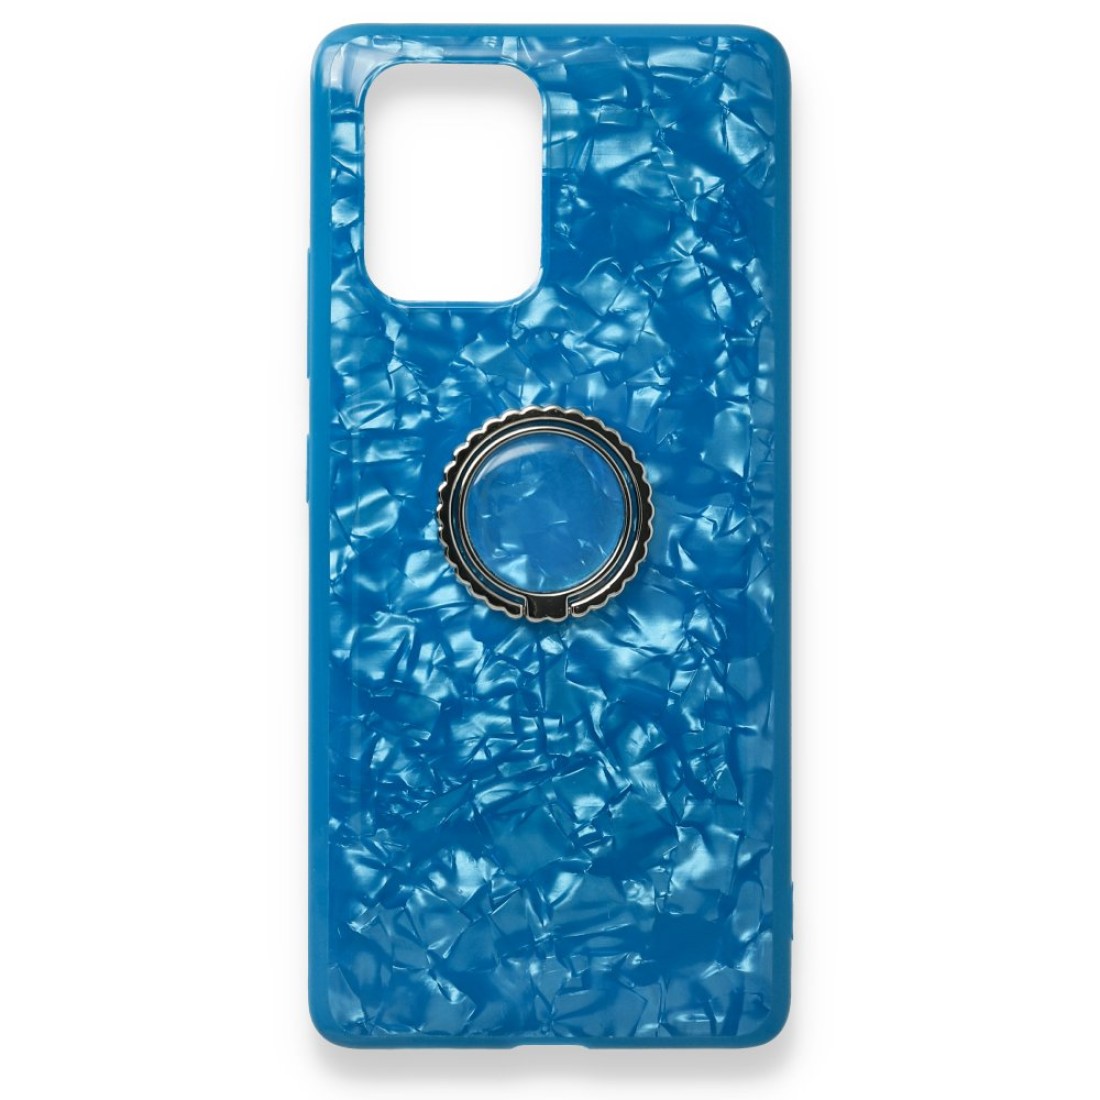 Samsung Galaxy A91 / S10 Lite Kılıf Marble Yüzüklü Silikon - Mavi